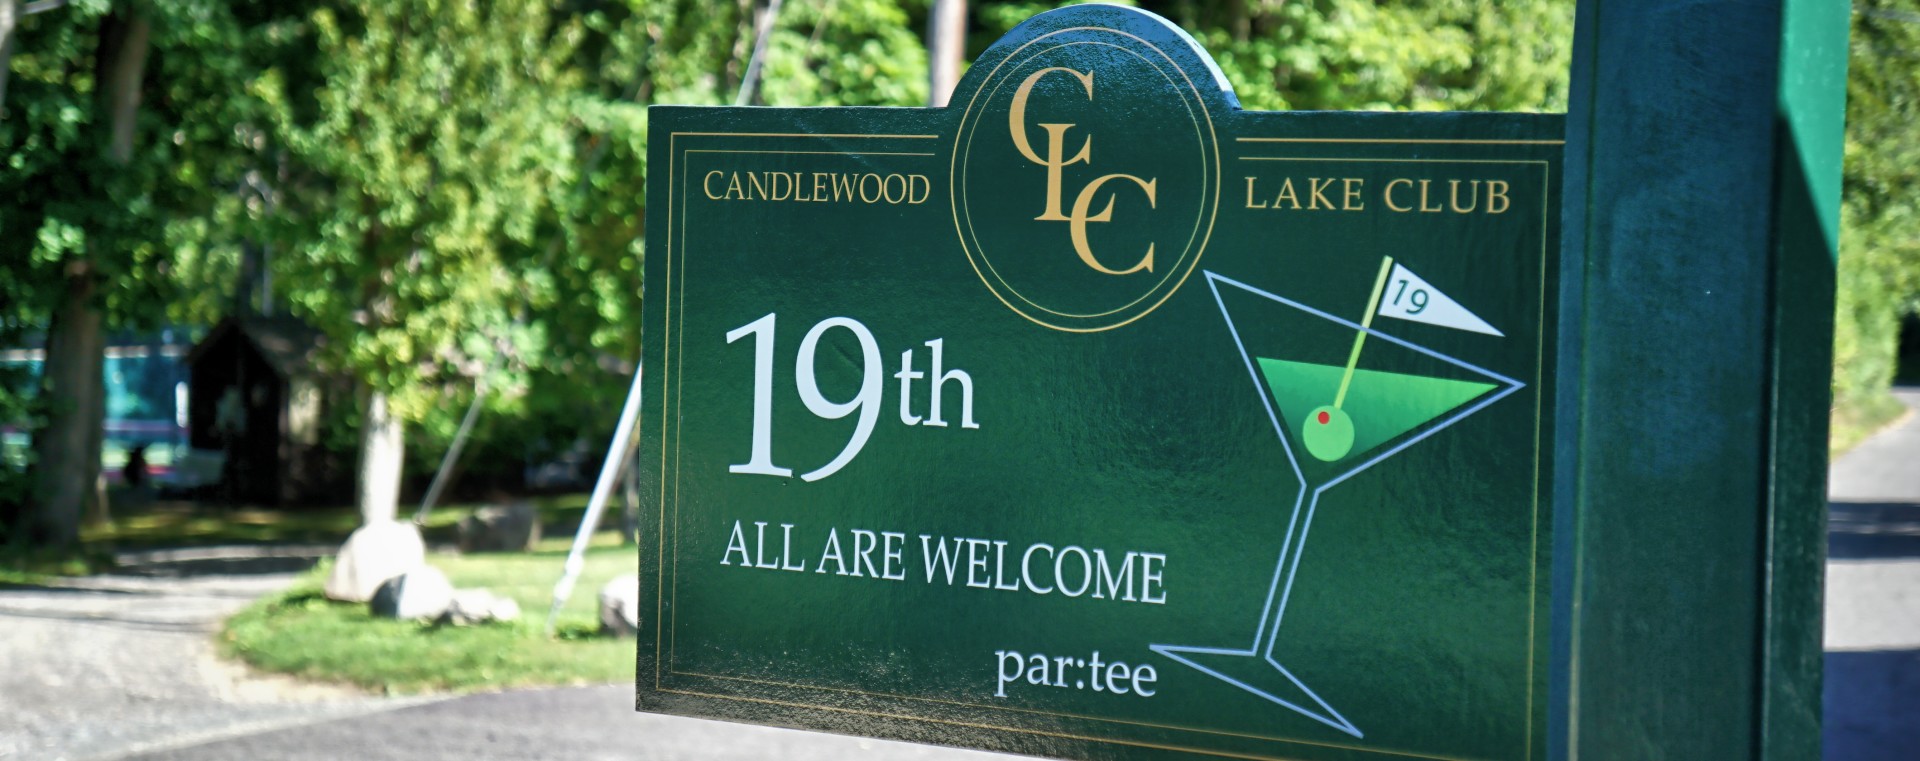 Candlewood Lake Club